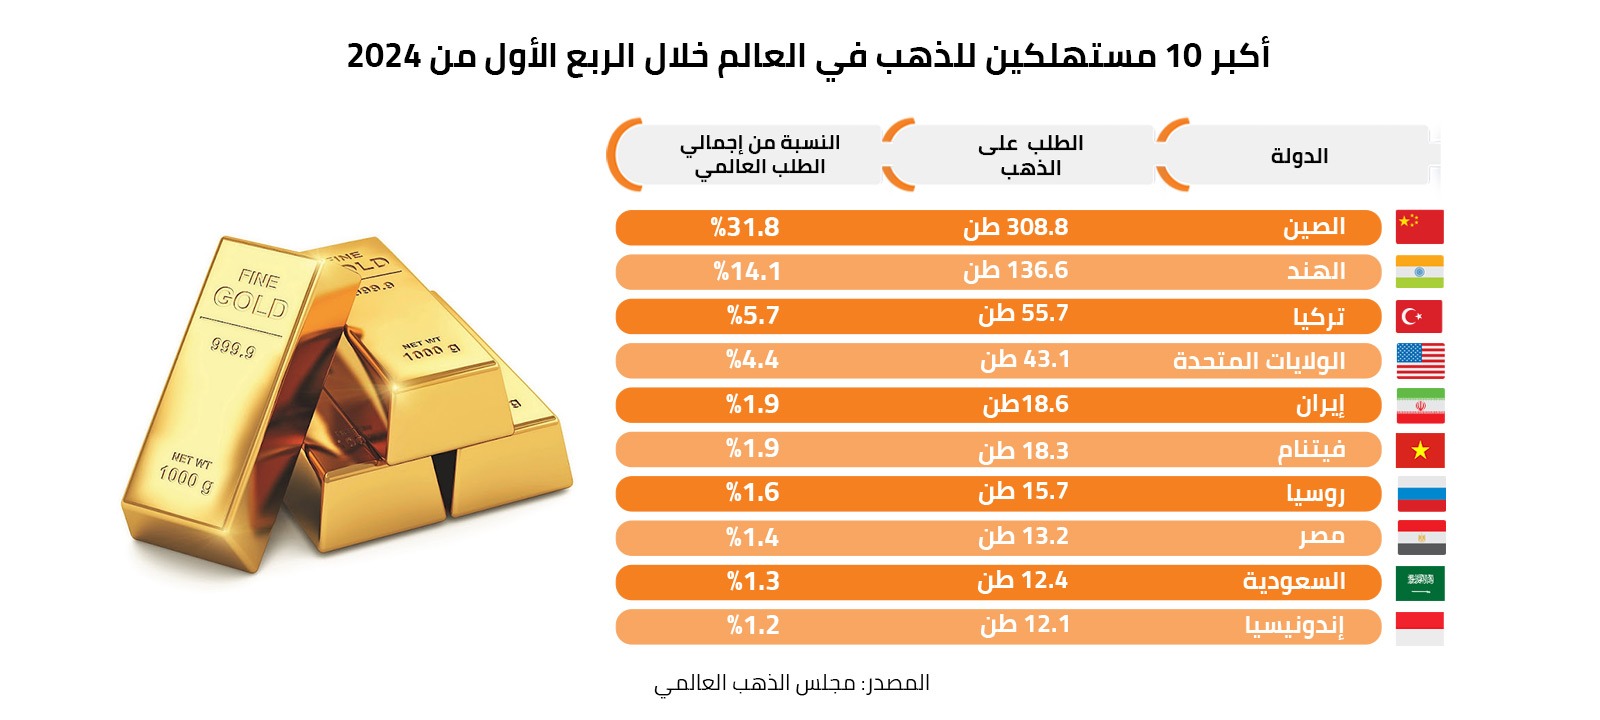 أكبر 10 مستهلكين للذهب في العالم خلال الربع الأول من 2024 